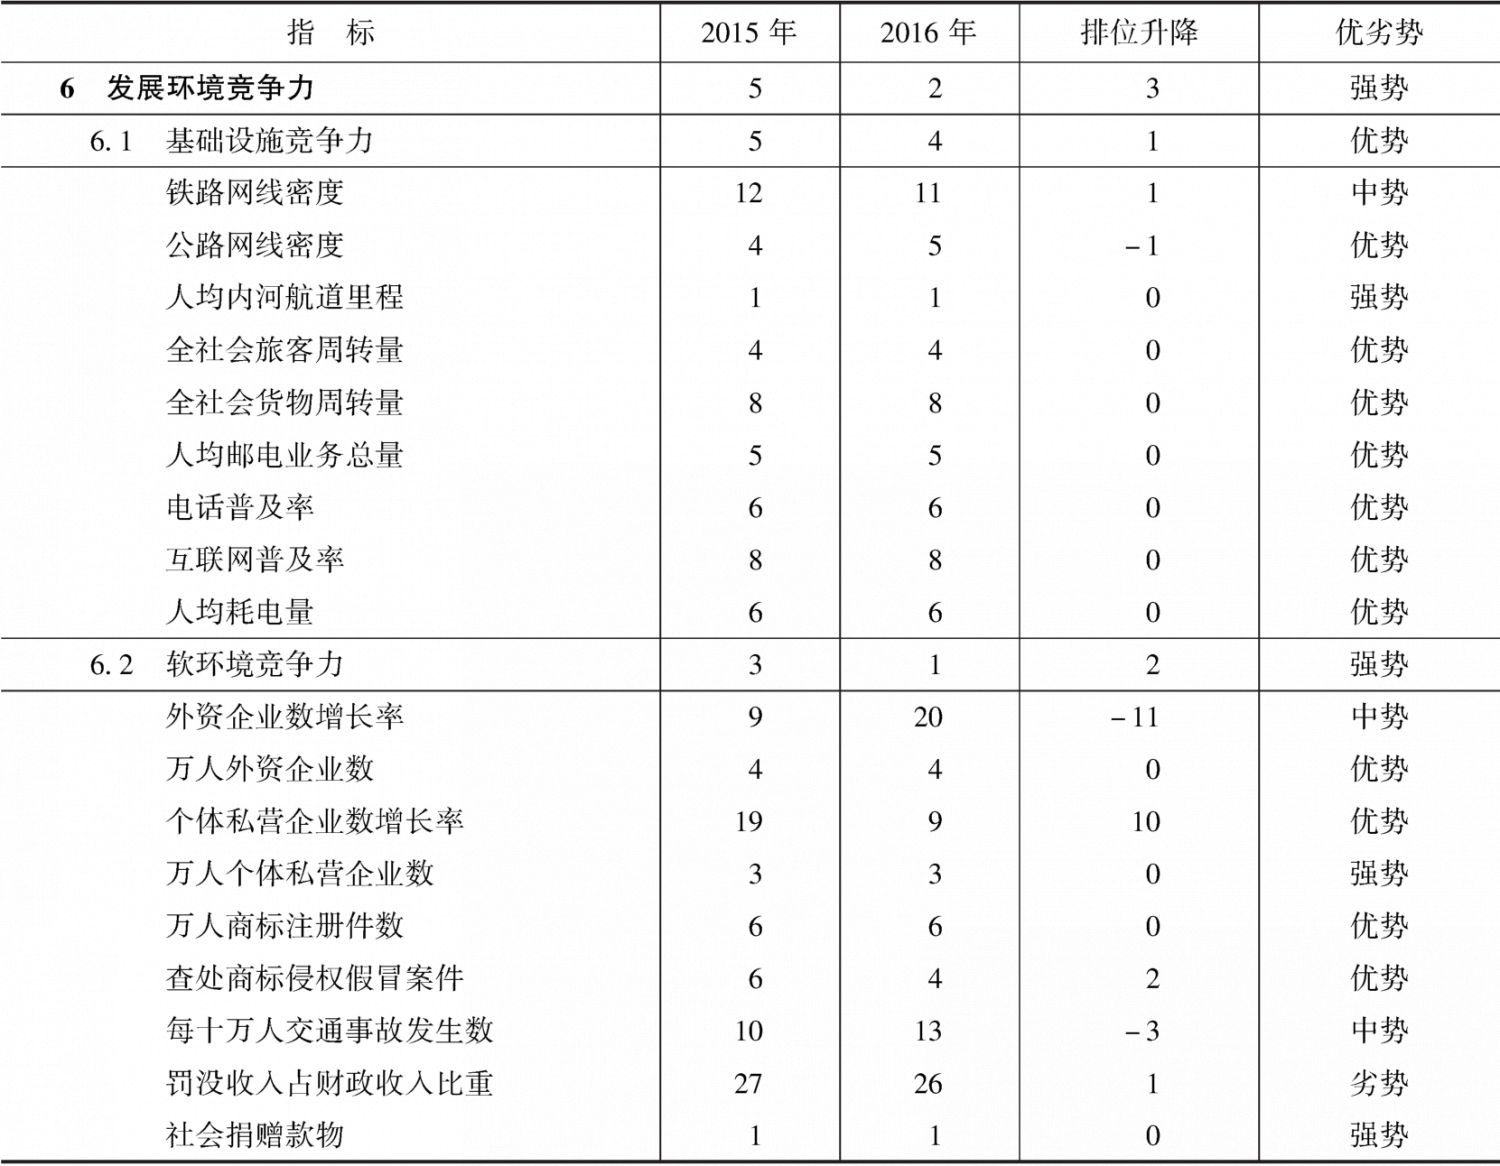 表10-10 2015～2016年江苏省发展环境竞争力指标组排位及变化趋势